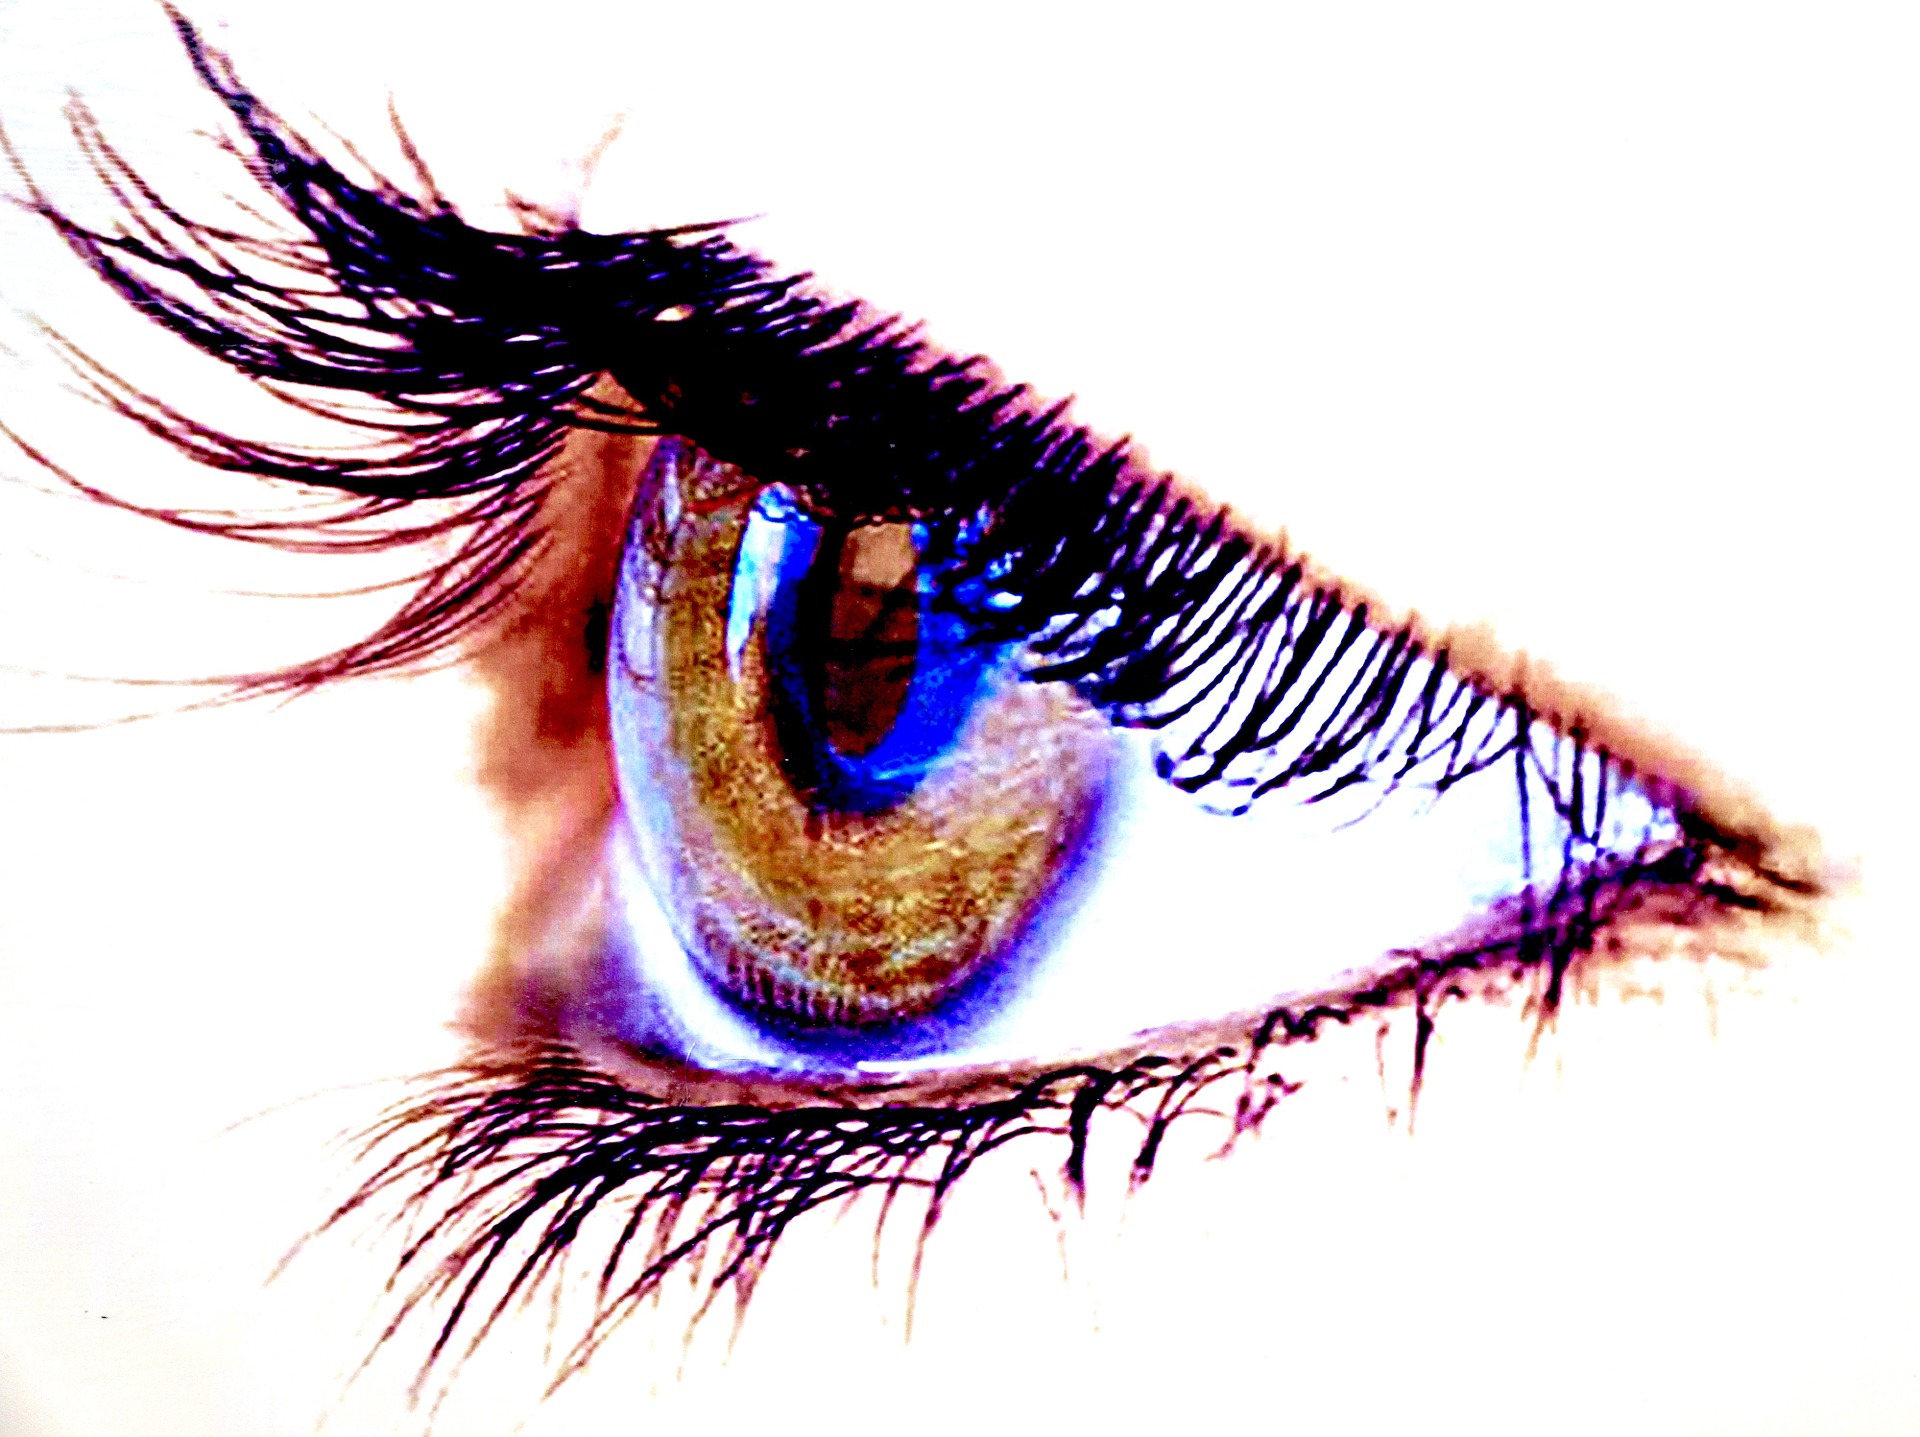 Blefaritis ili upala očnih vjeđa - kako liječiti upalu?